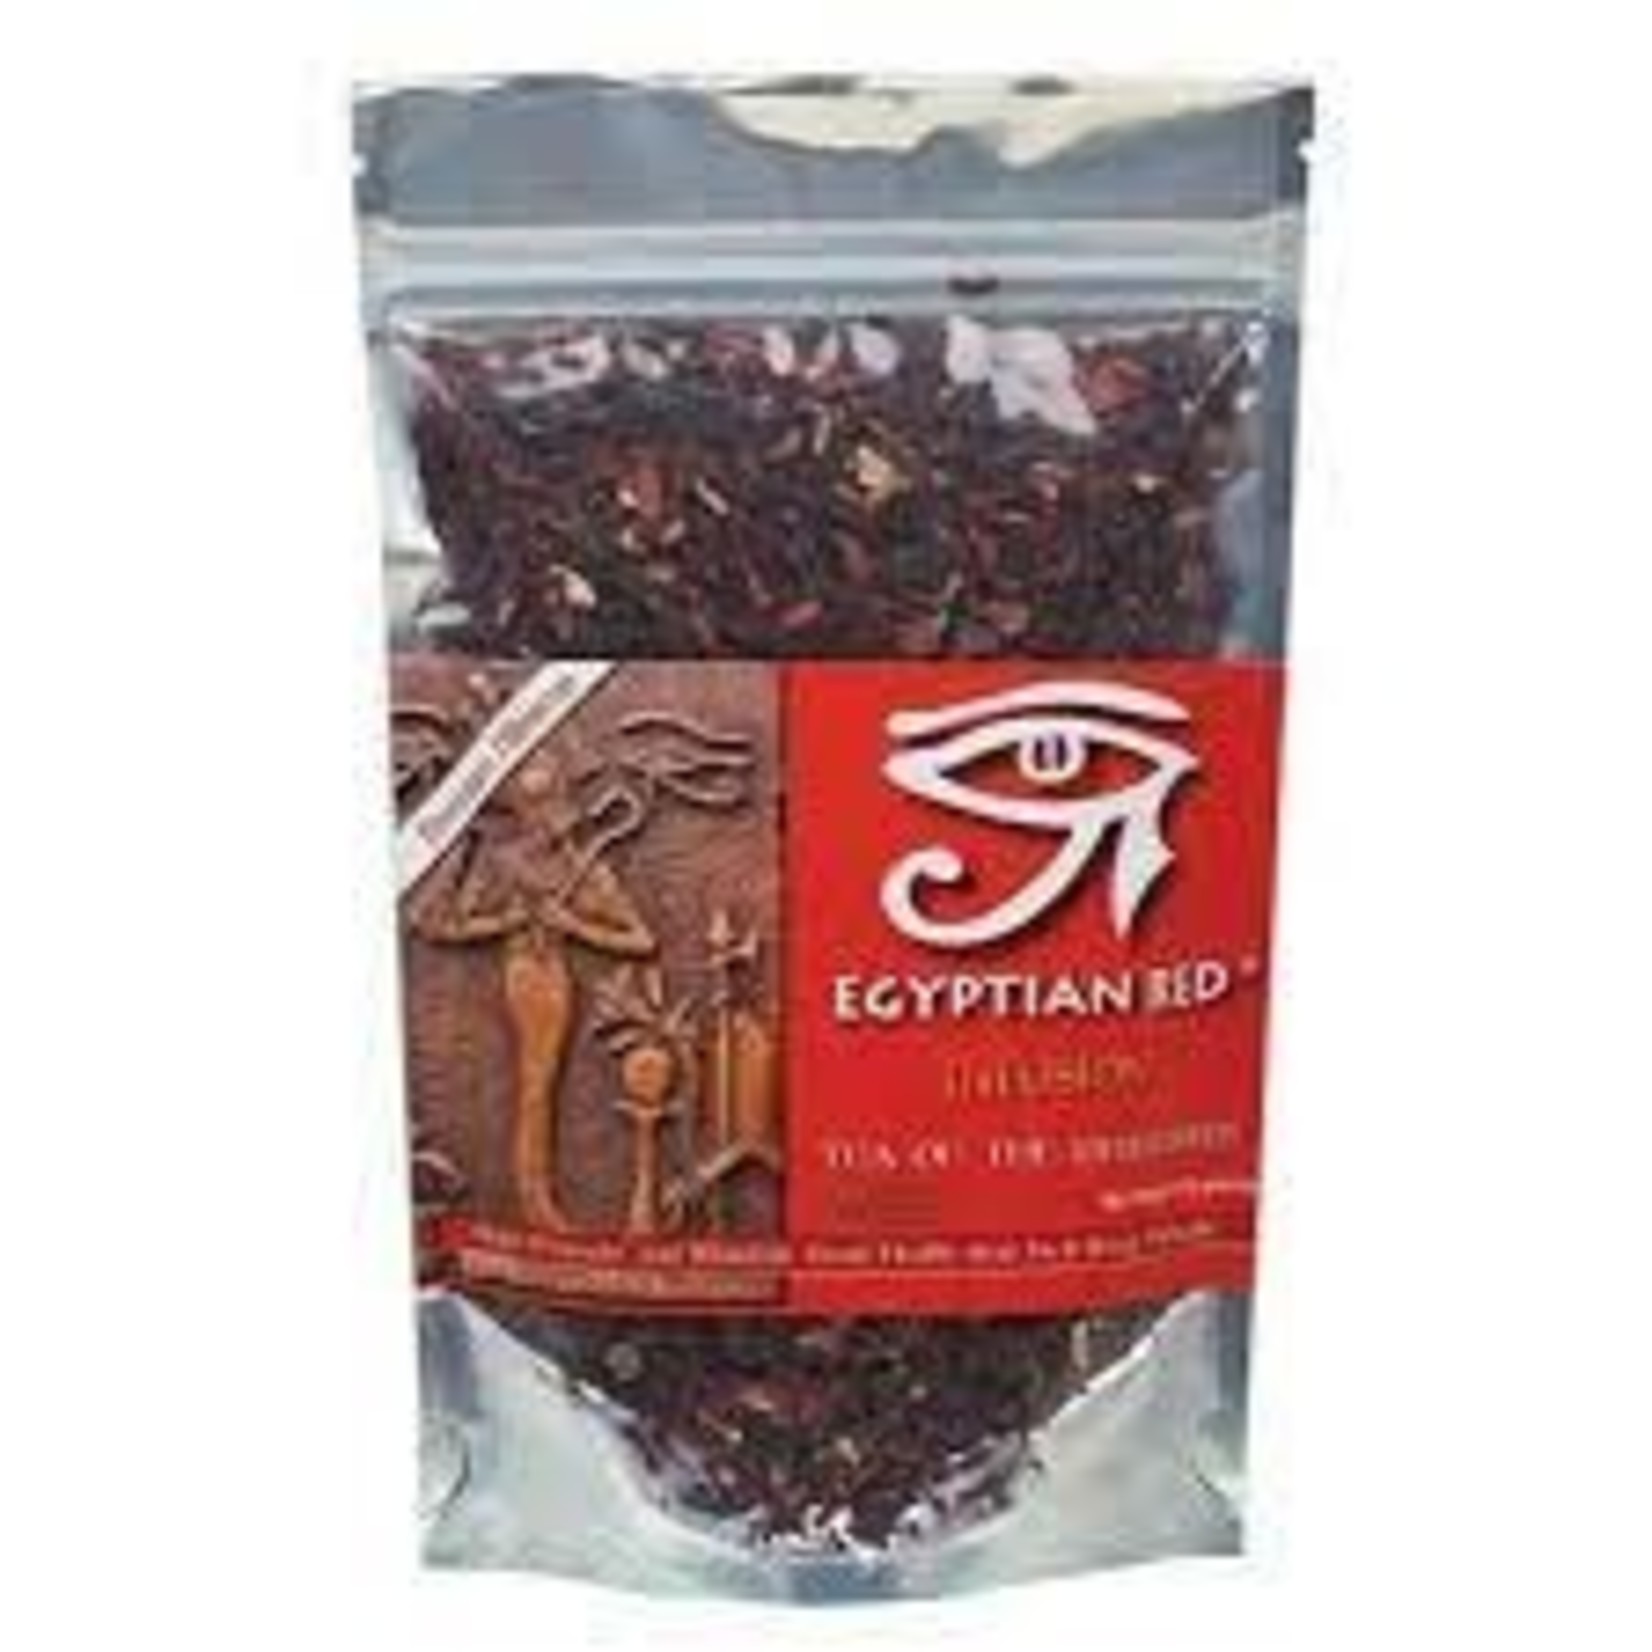 EGYPTIAN RED egyptian red Herbal Tea Bags tea of the pharoahs 100g